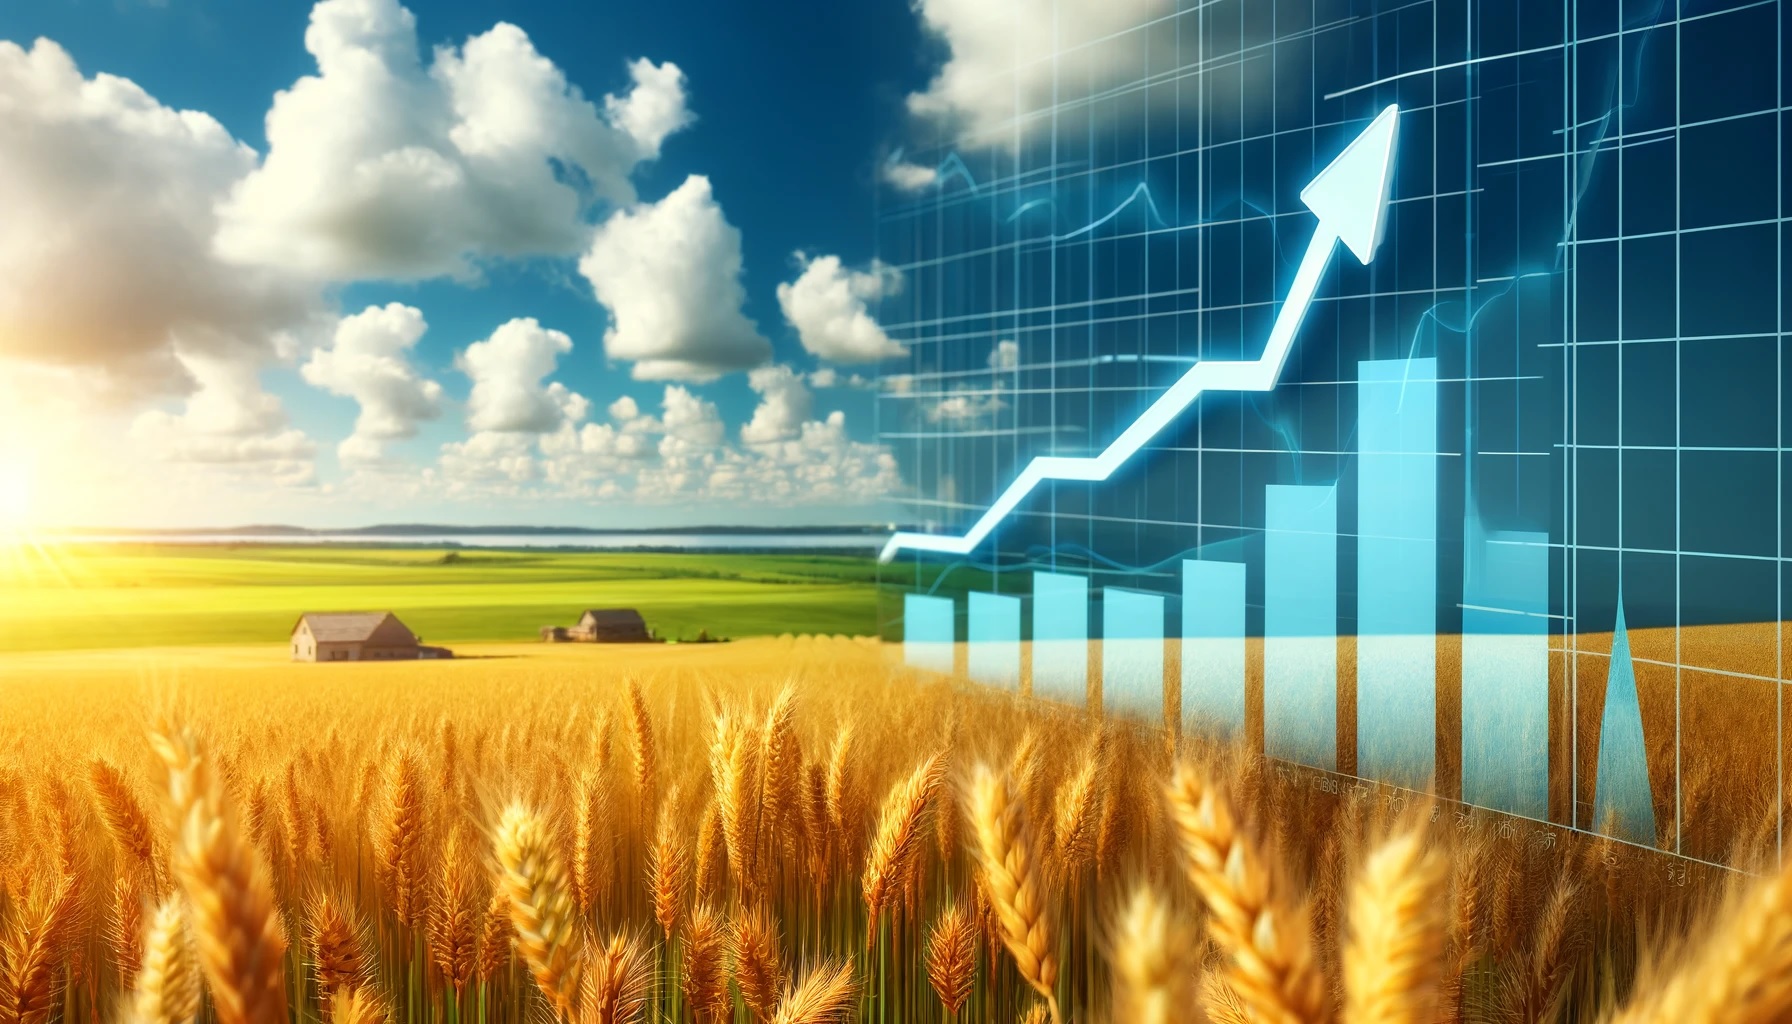 Das Bild zeigt ein reifes Weizenfeld mit einem eingeblendeten Kursdiagramm, das die jüngsten Preisschwankungen darstellt. Die blühenden Weizenähren symbolisieren die Erholung des Weizenpreises nach einem Rückgang Agrarrohstoffe